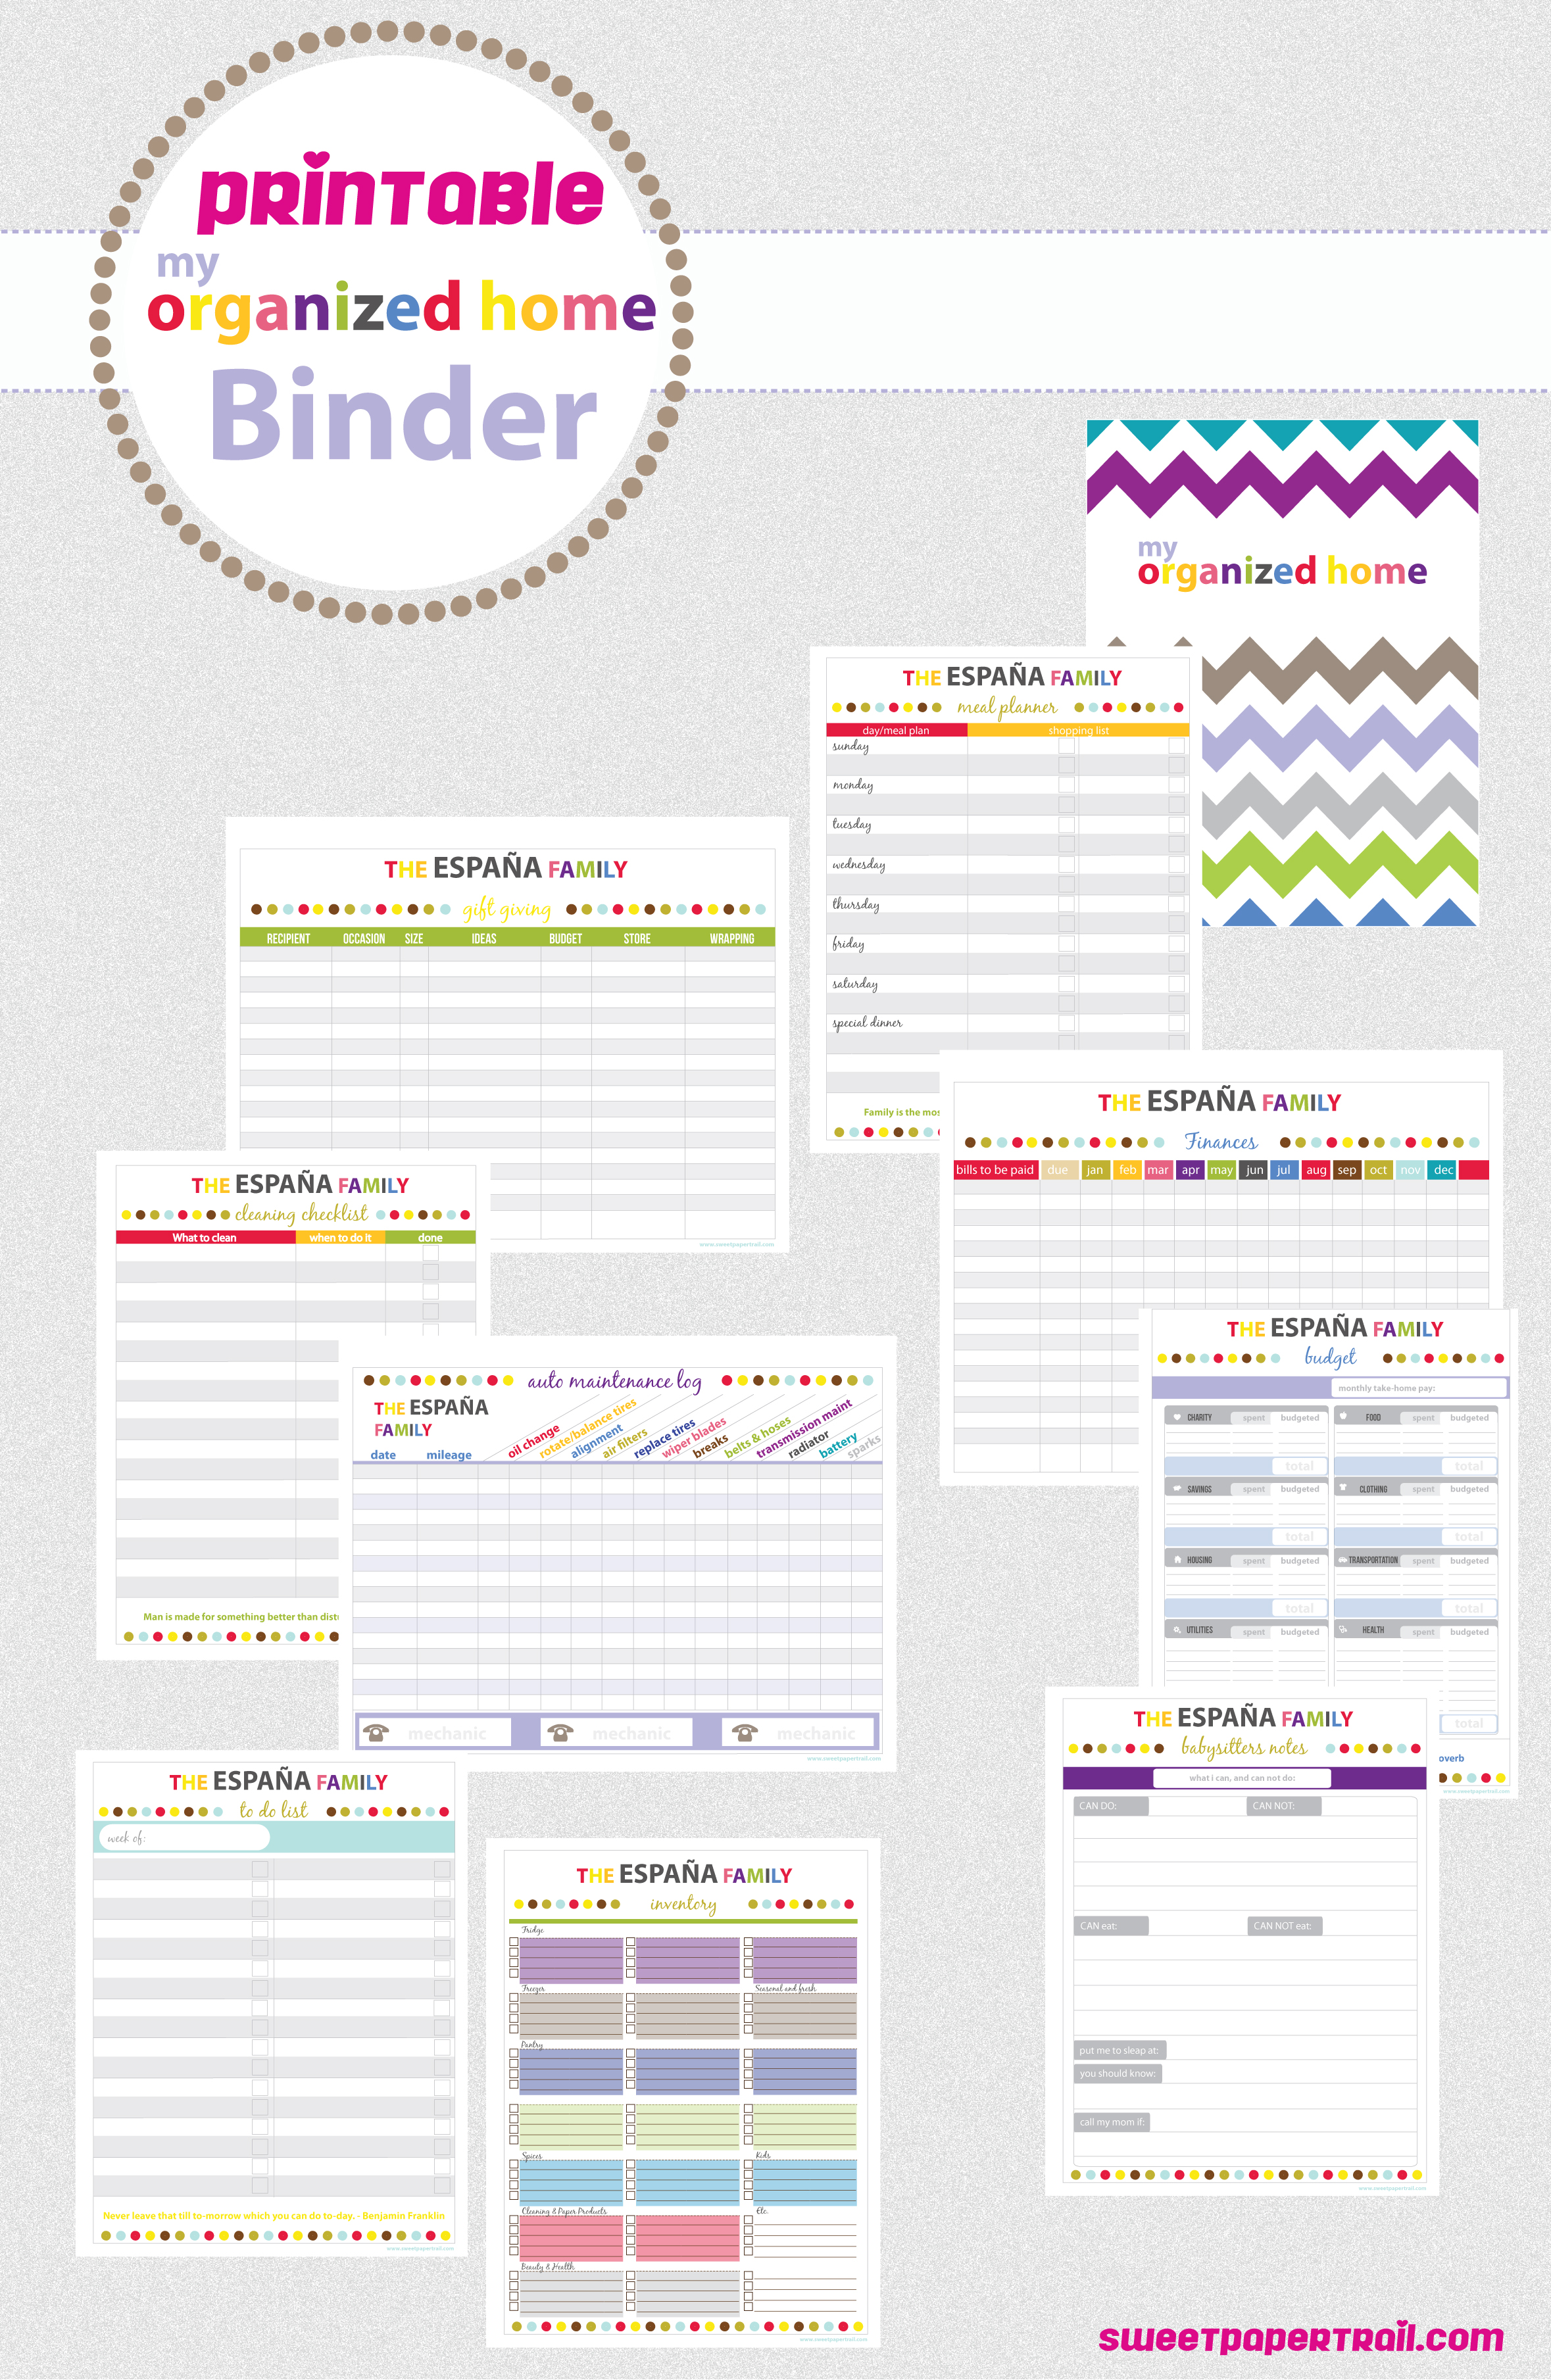 binder-printable-images-gallery-category-page-11-printablee